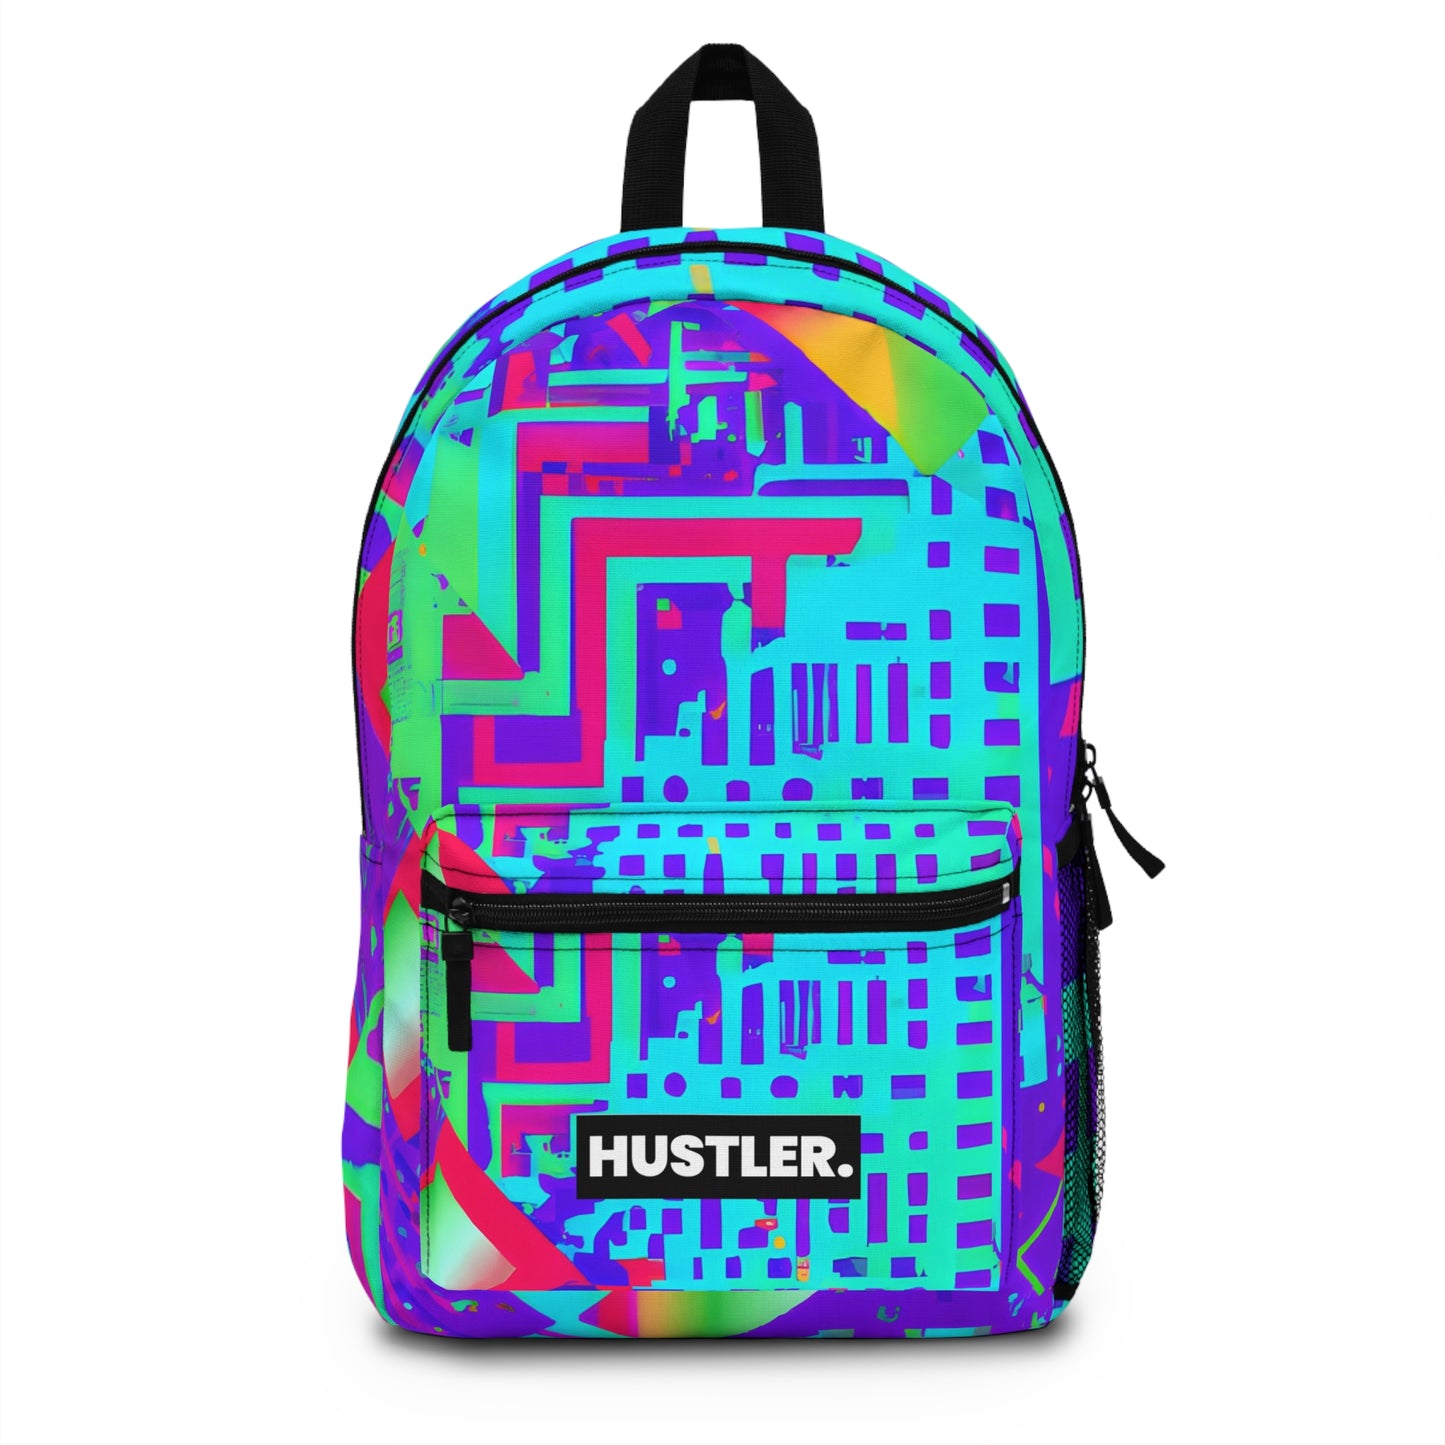 GalaxyGlamazon - Hustler Backpack